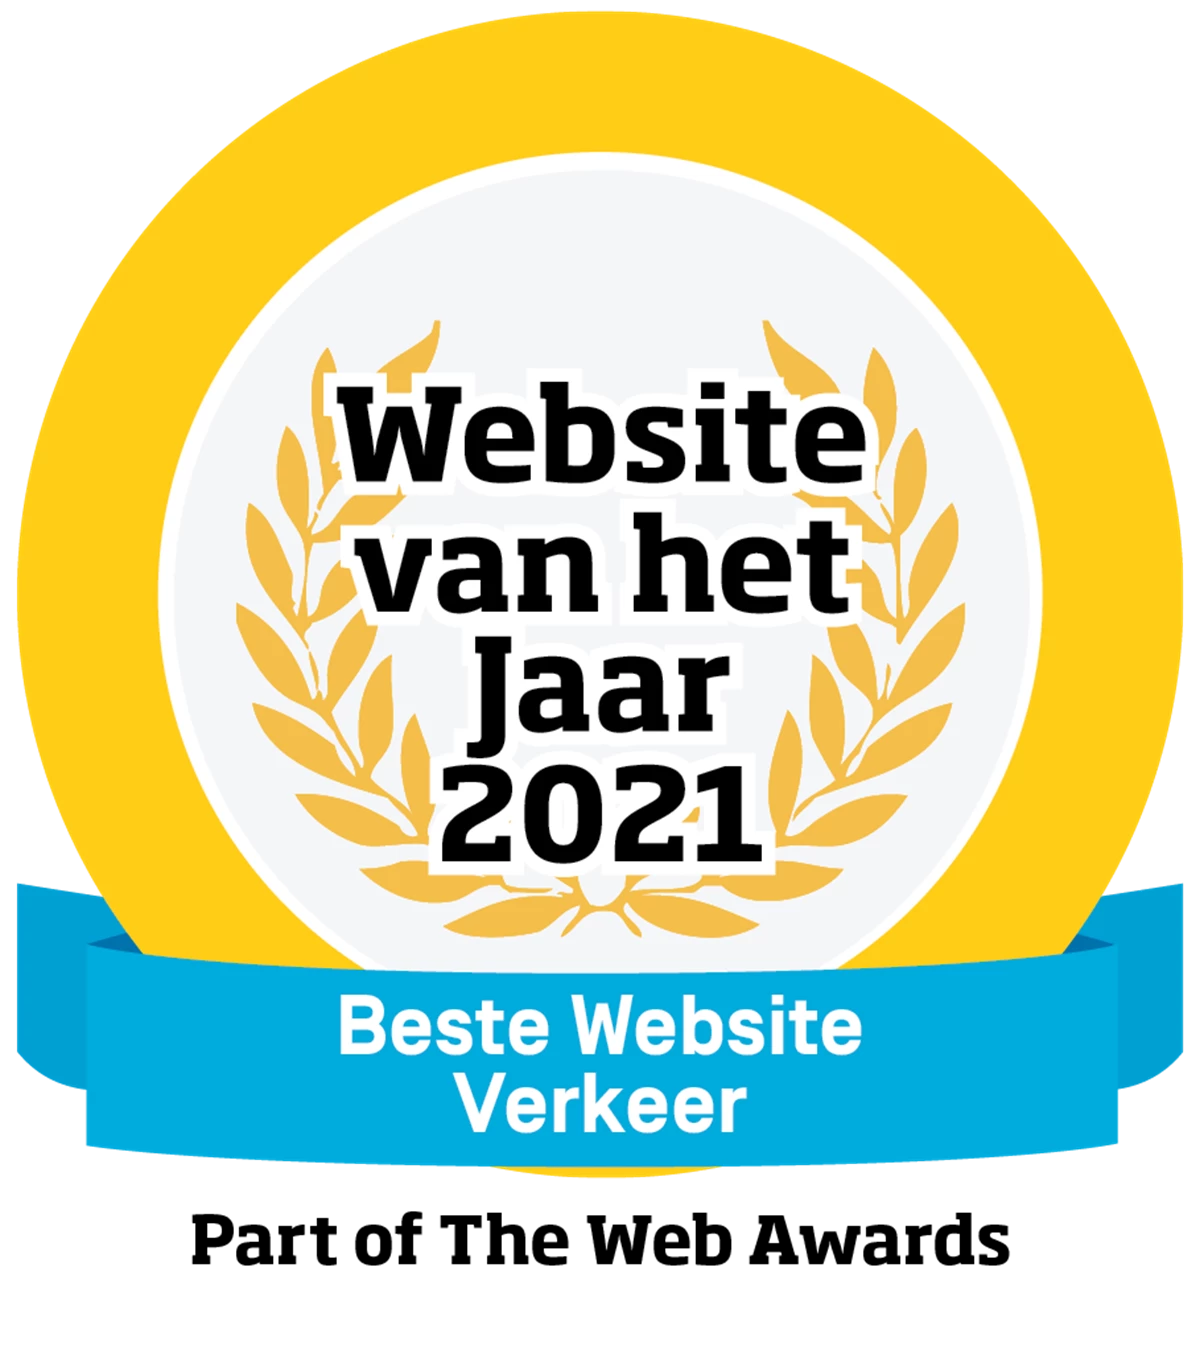 Het logo voor Beste Website van het jaar in de categorie Verkeer